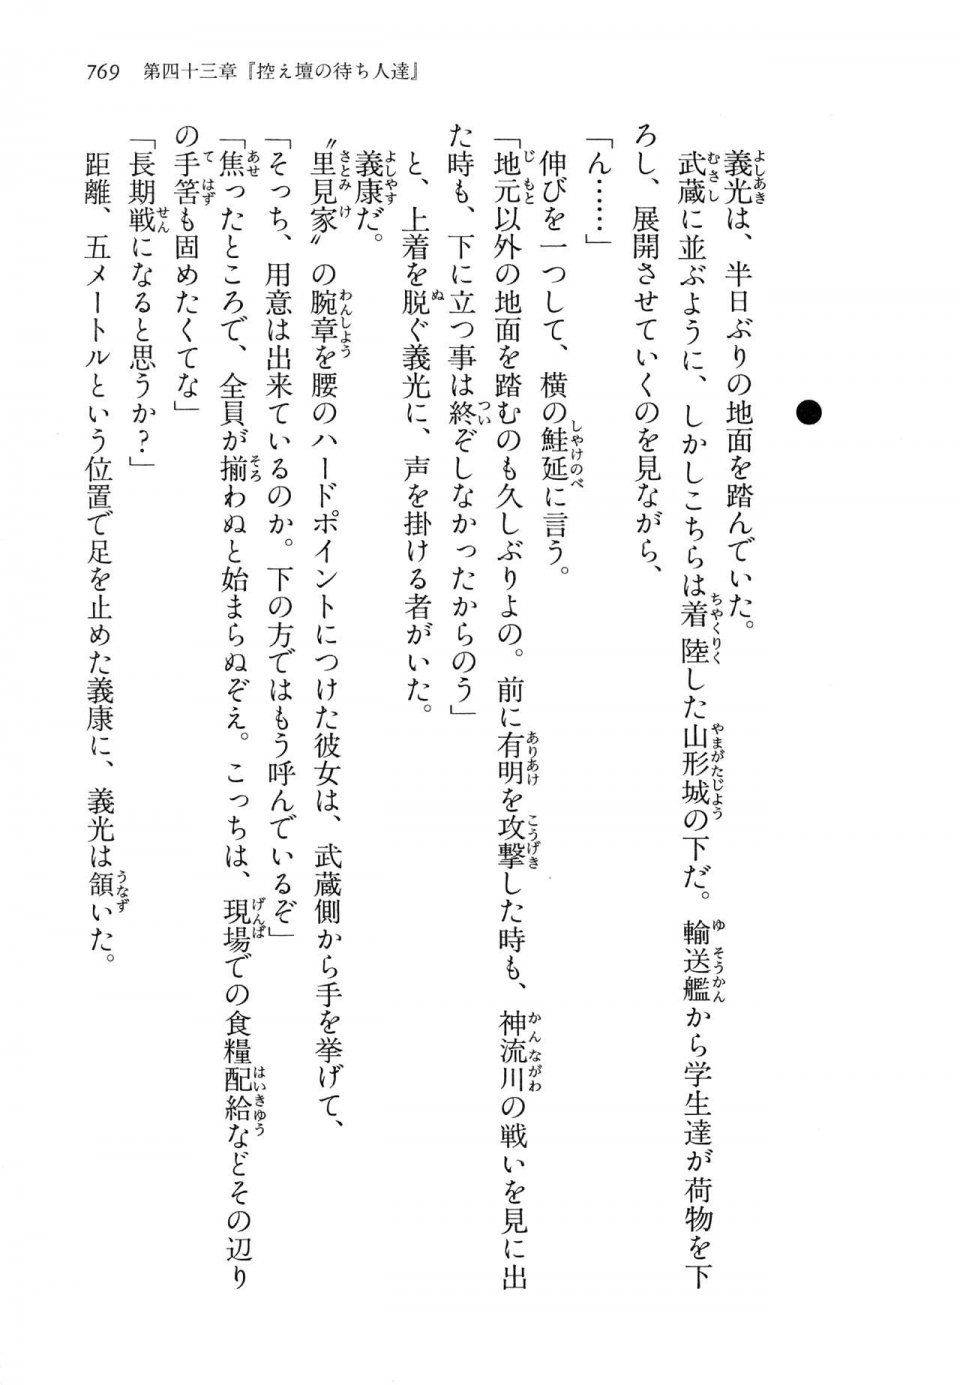 Kyoukai Senjou no Horizon LN Vol 14(6B) - Photo #769